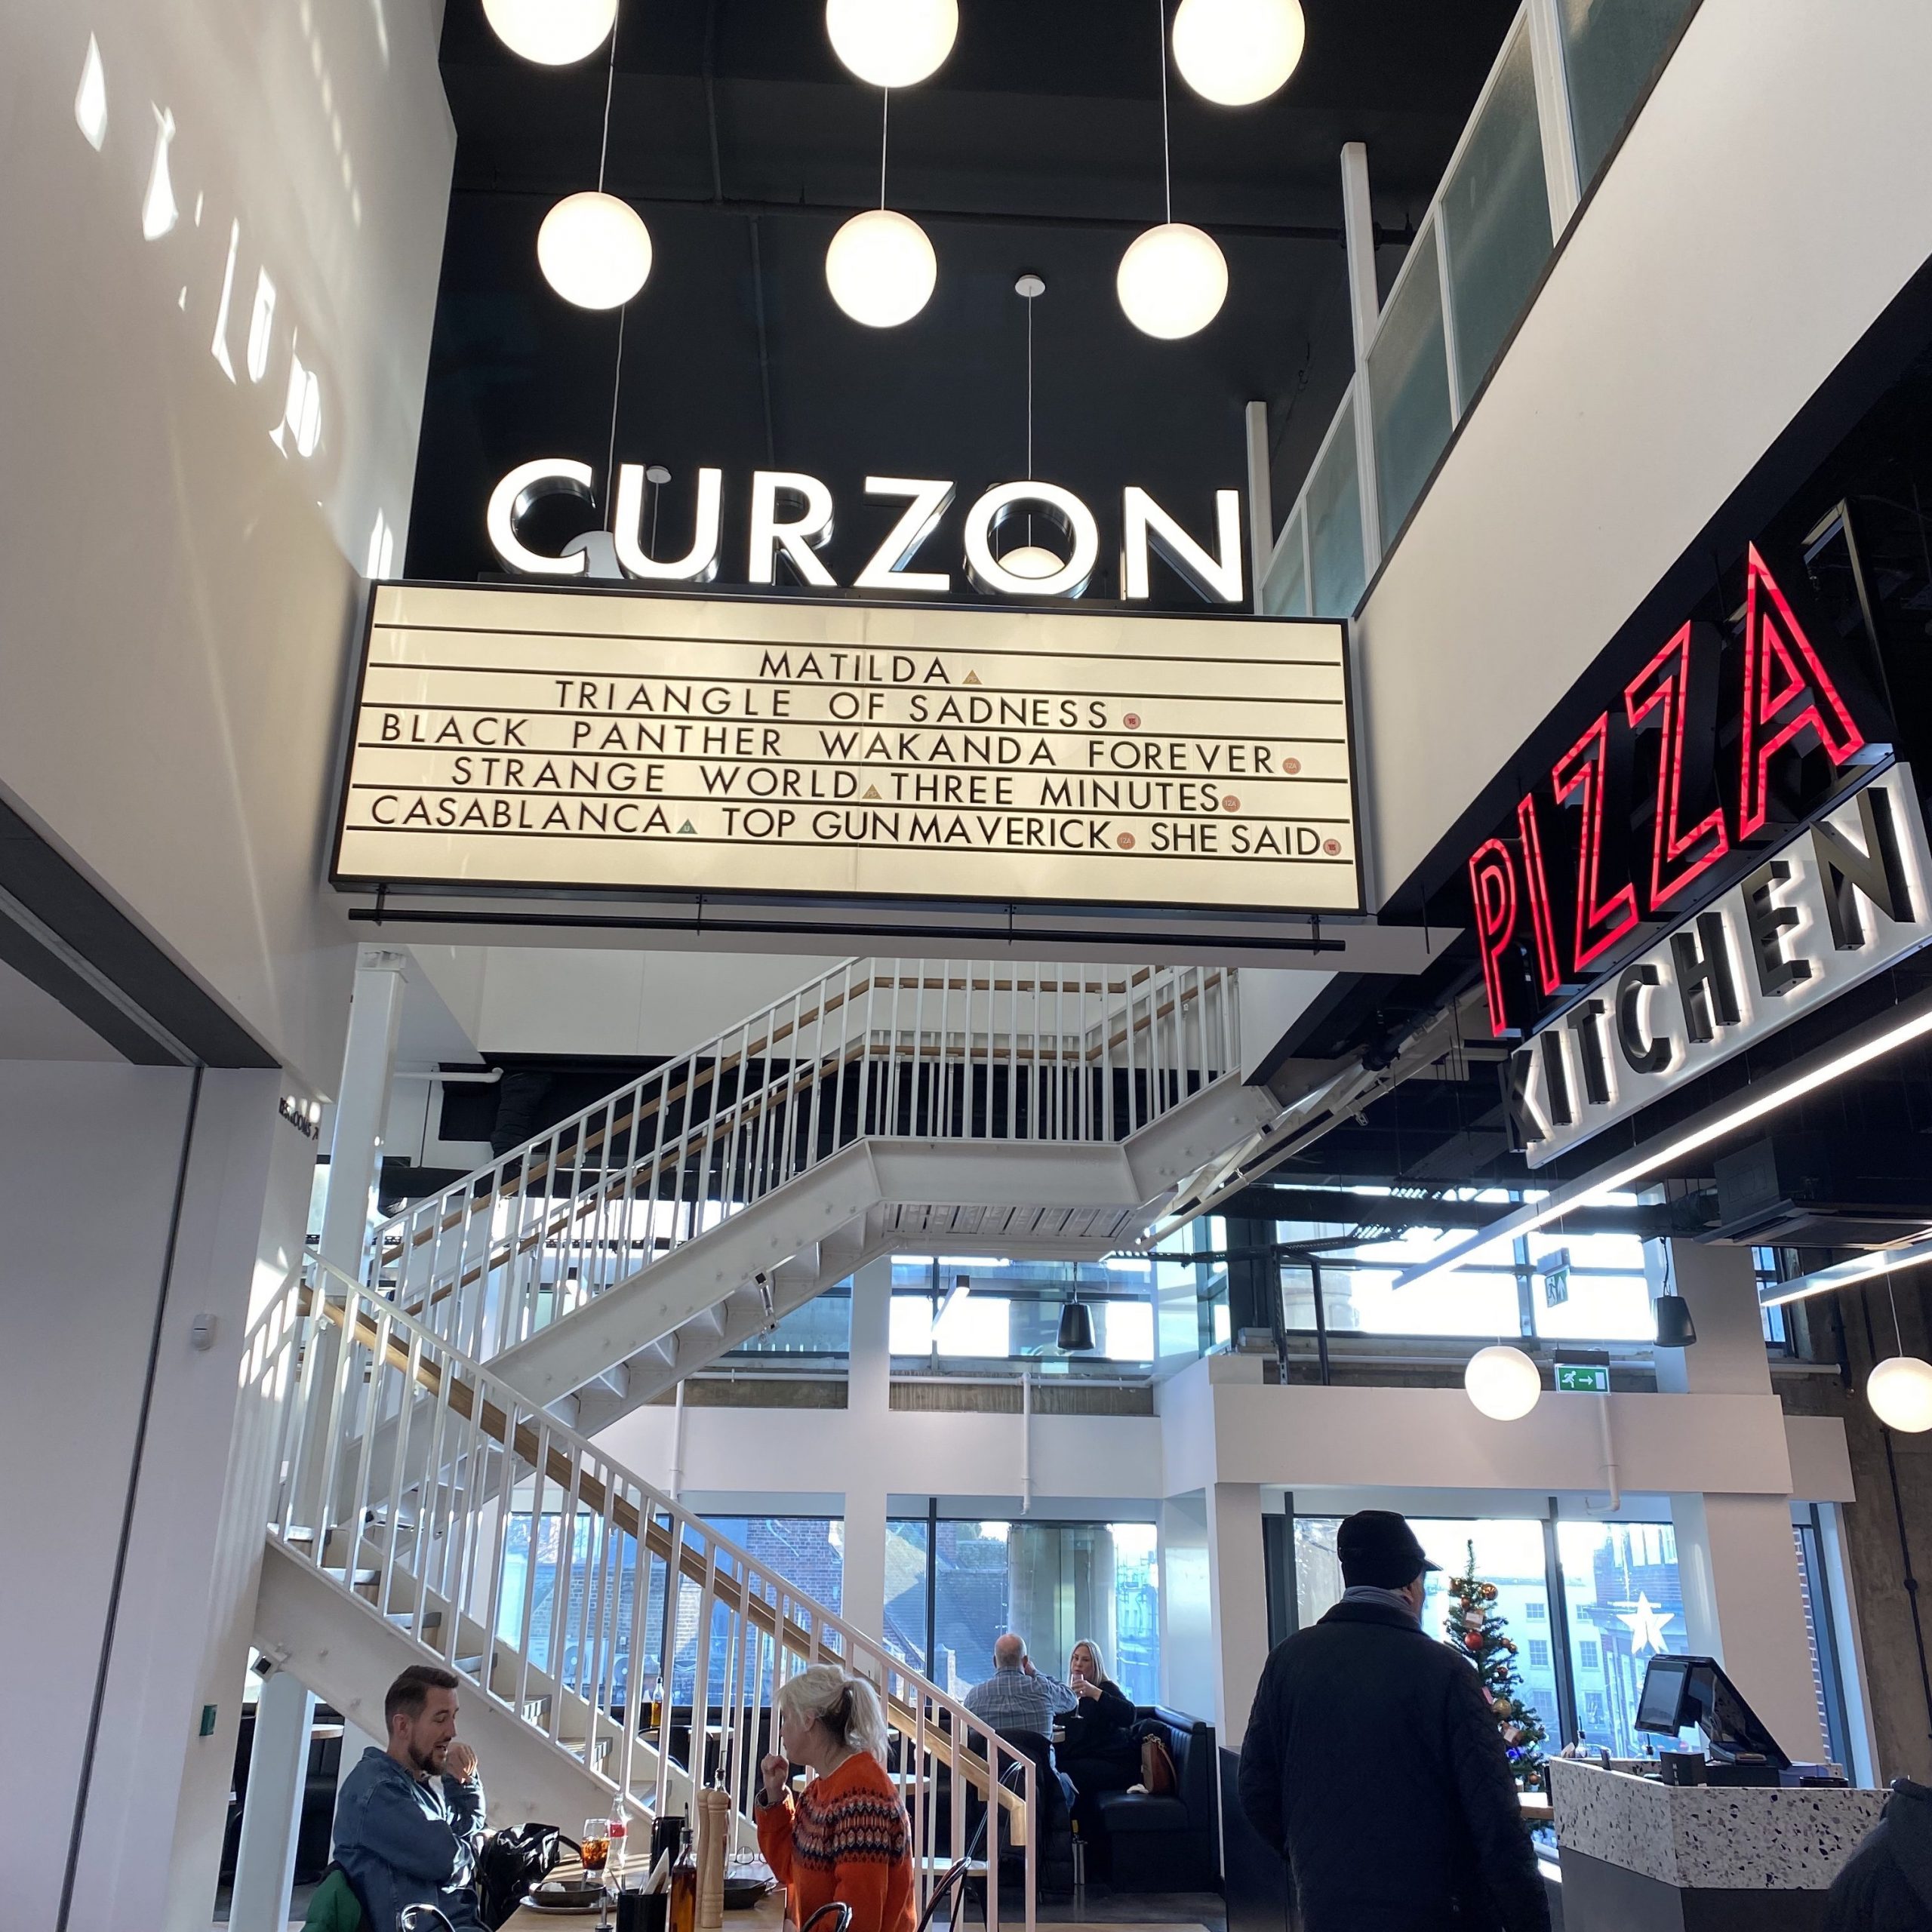 Curzon cinema entrance